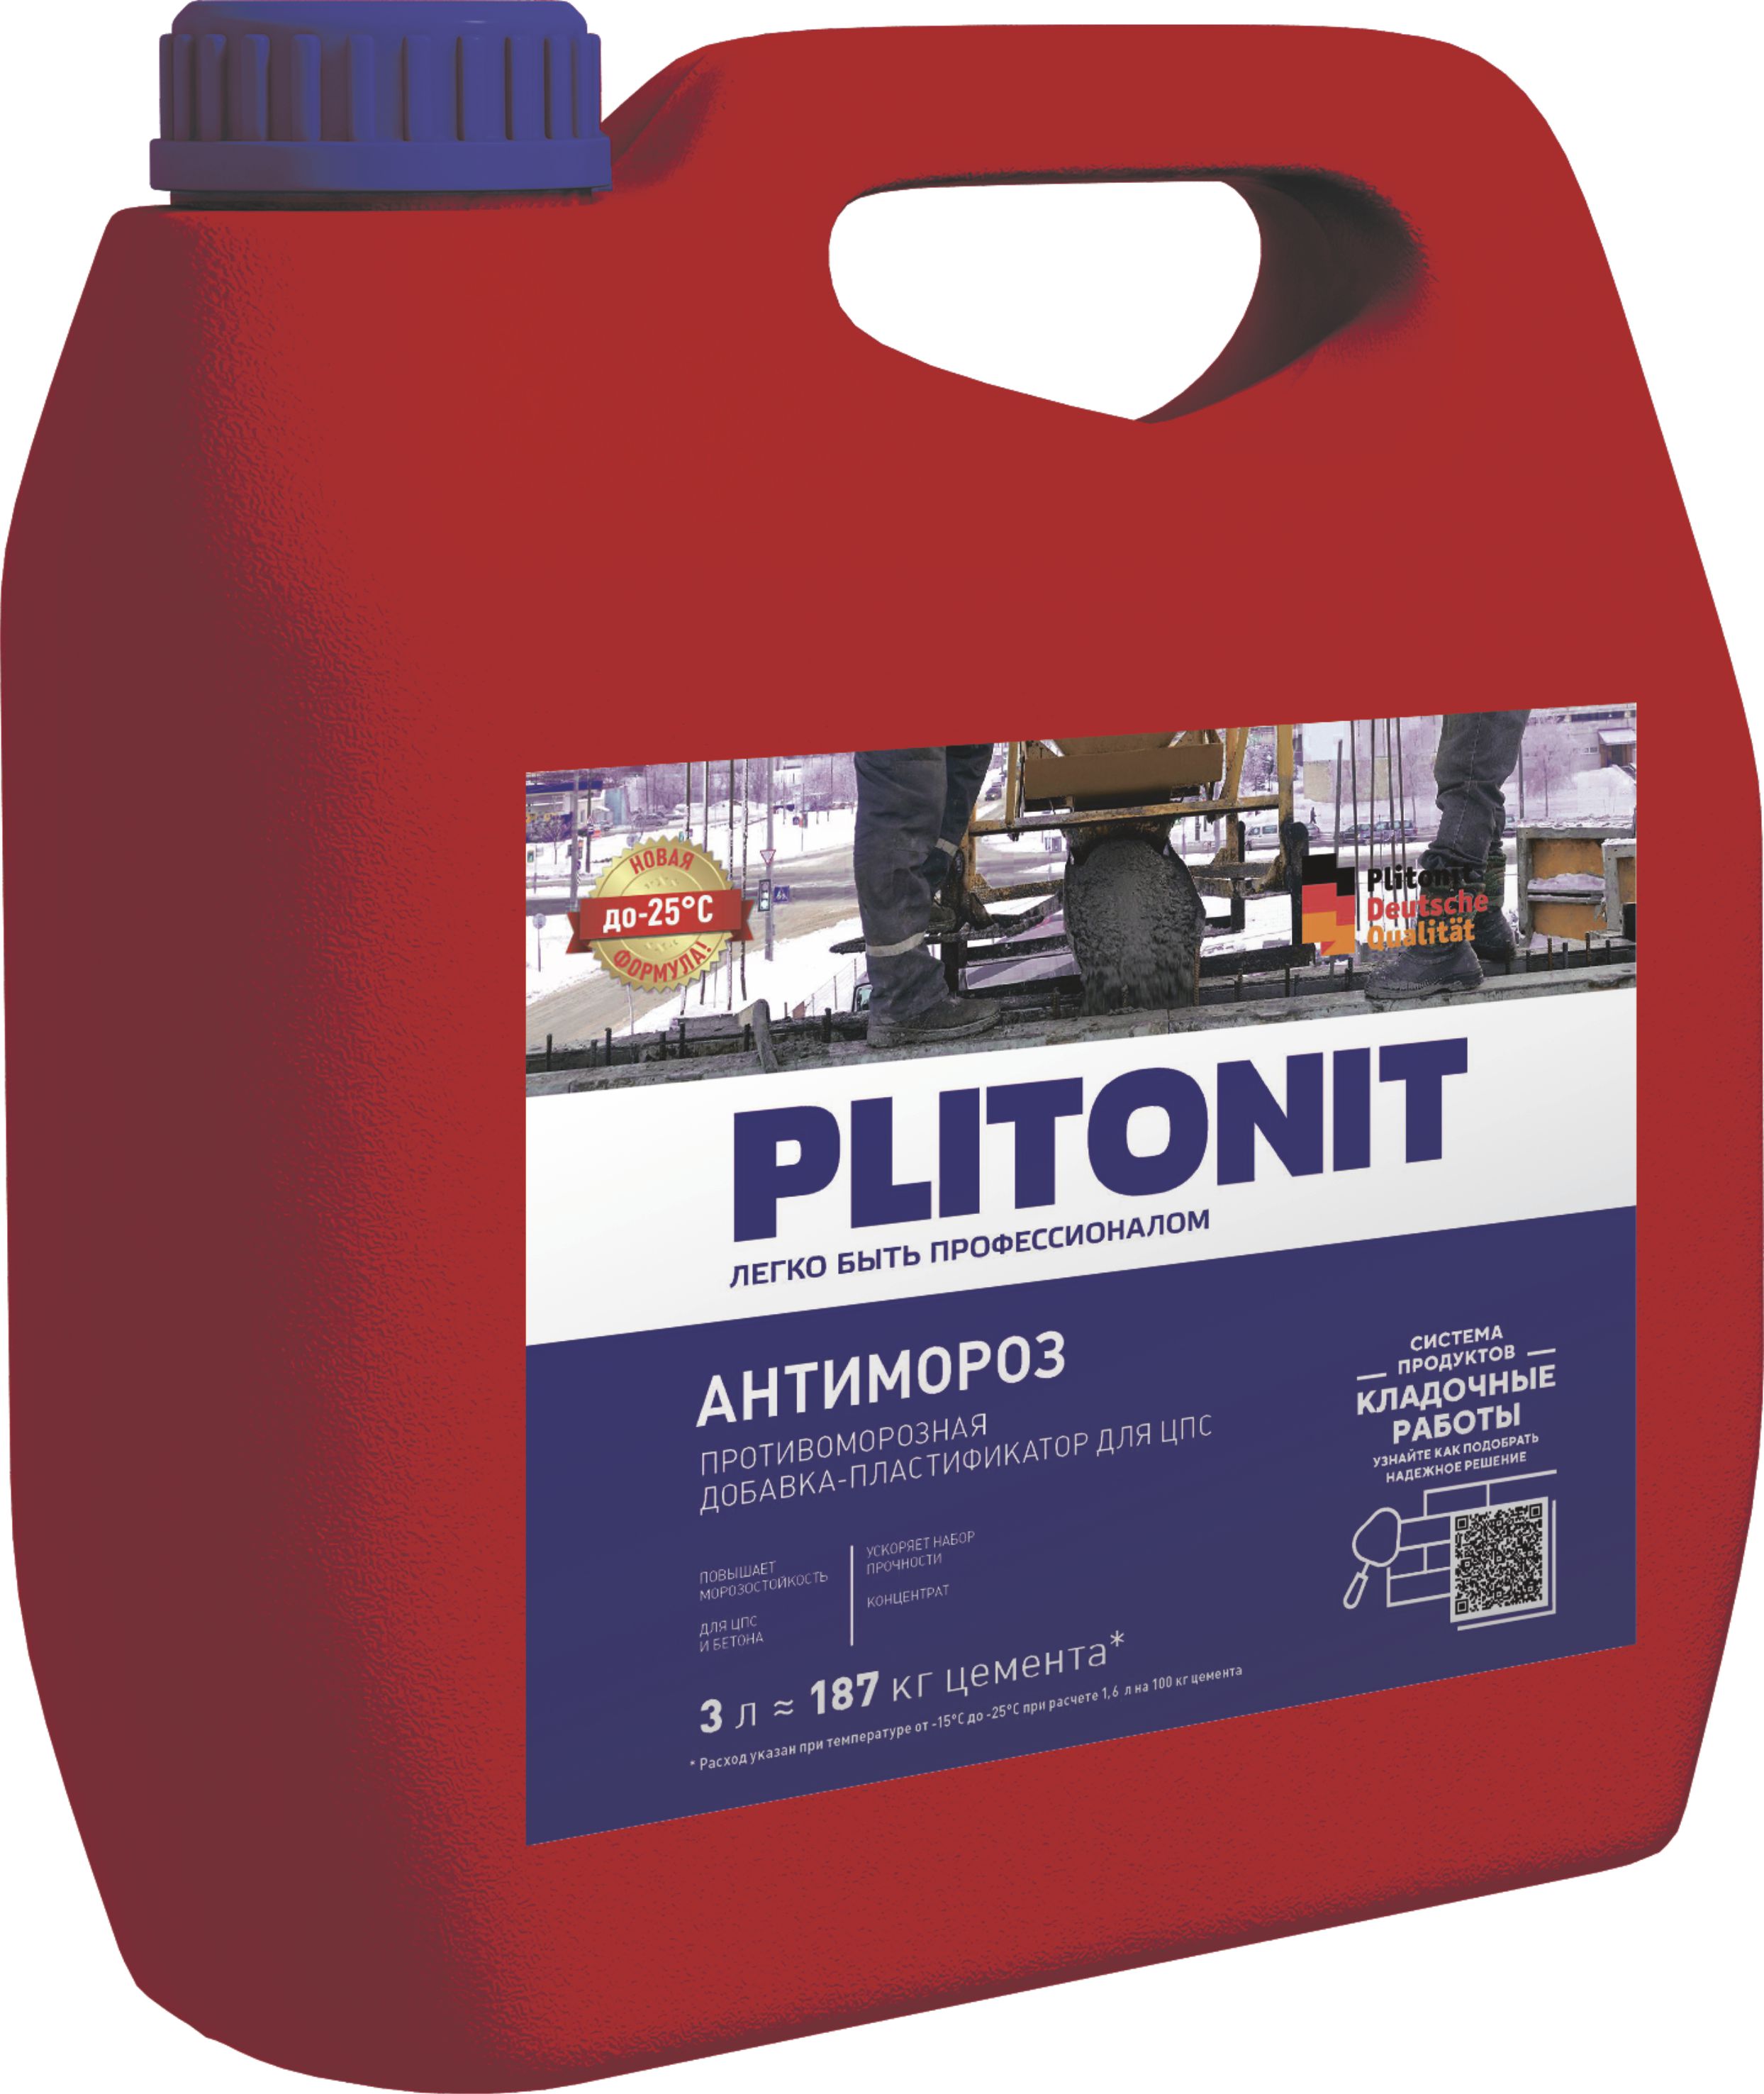 PLITONIT АнтиМороз -3 добавка для растворов  